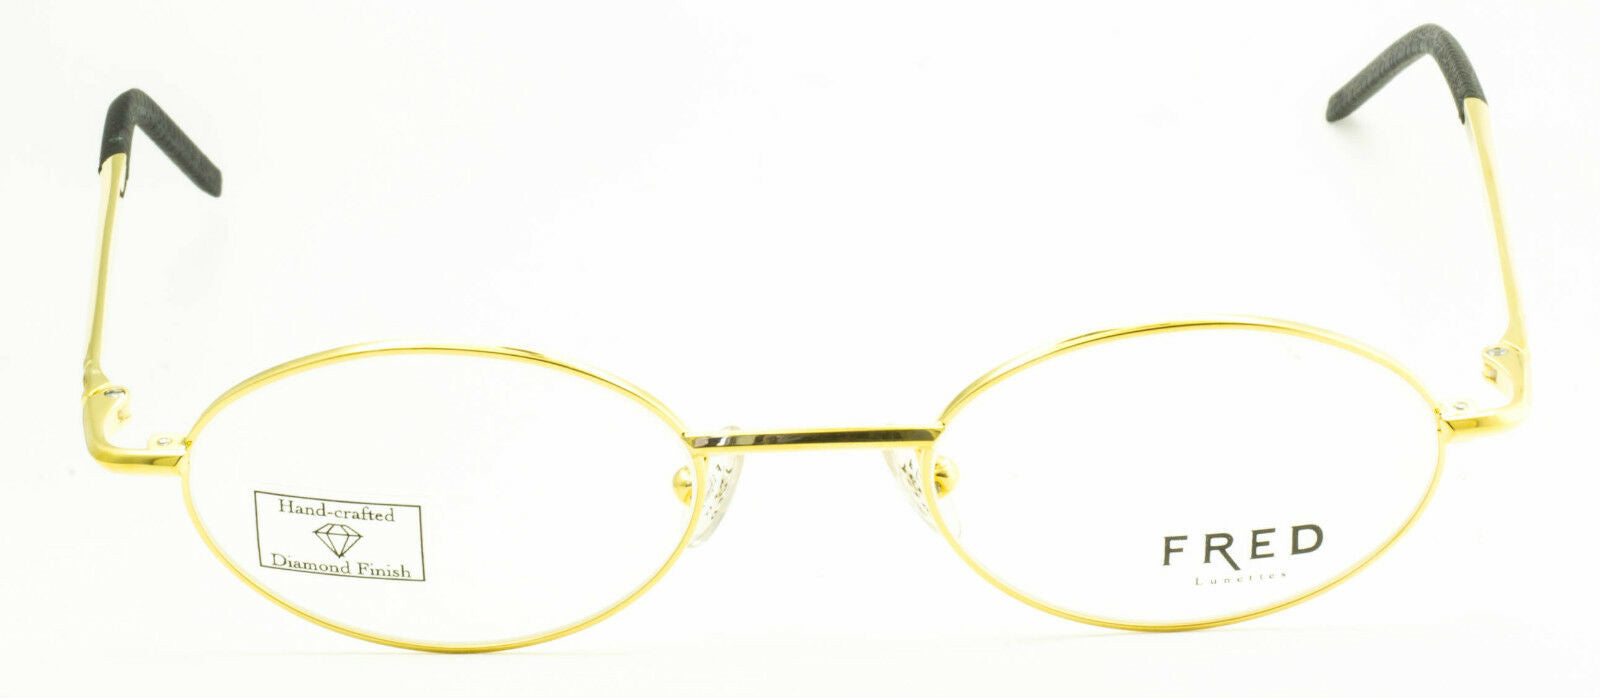 FRED Lunettes Cut 001 Eyewear FRAMES RX Optical Eyeglasses Glasses France- BNIB